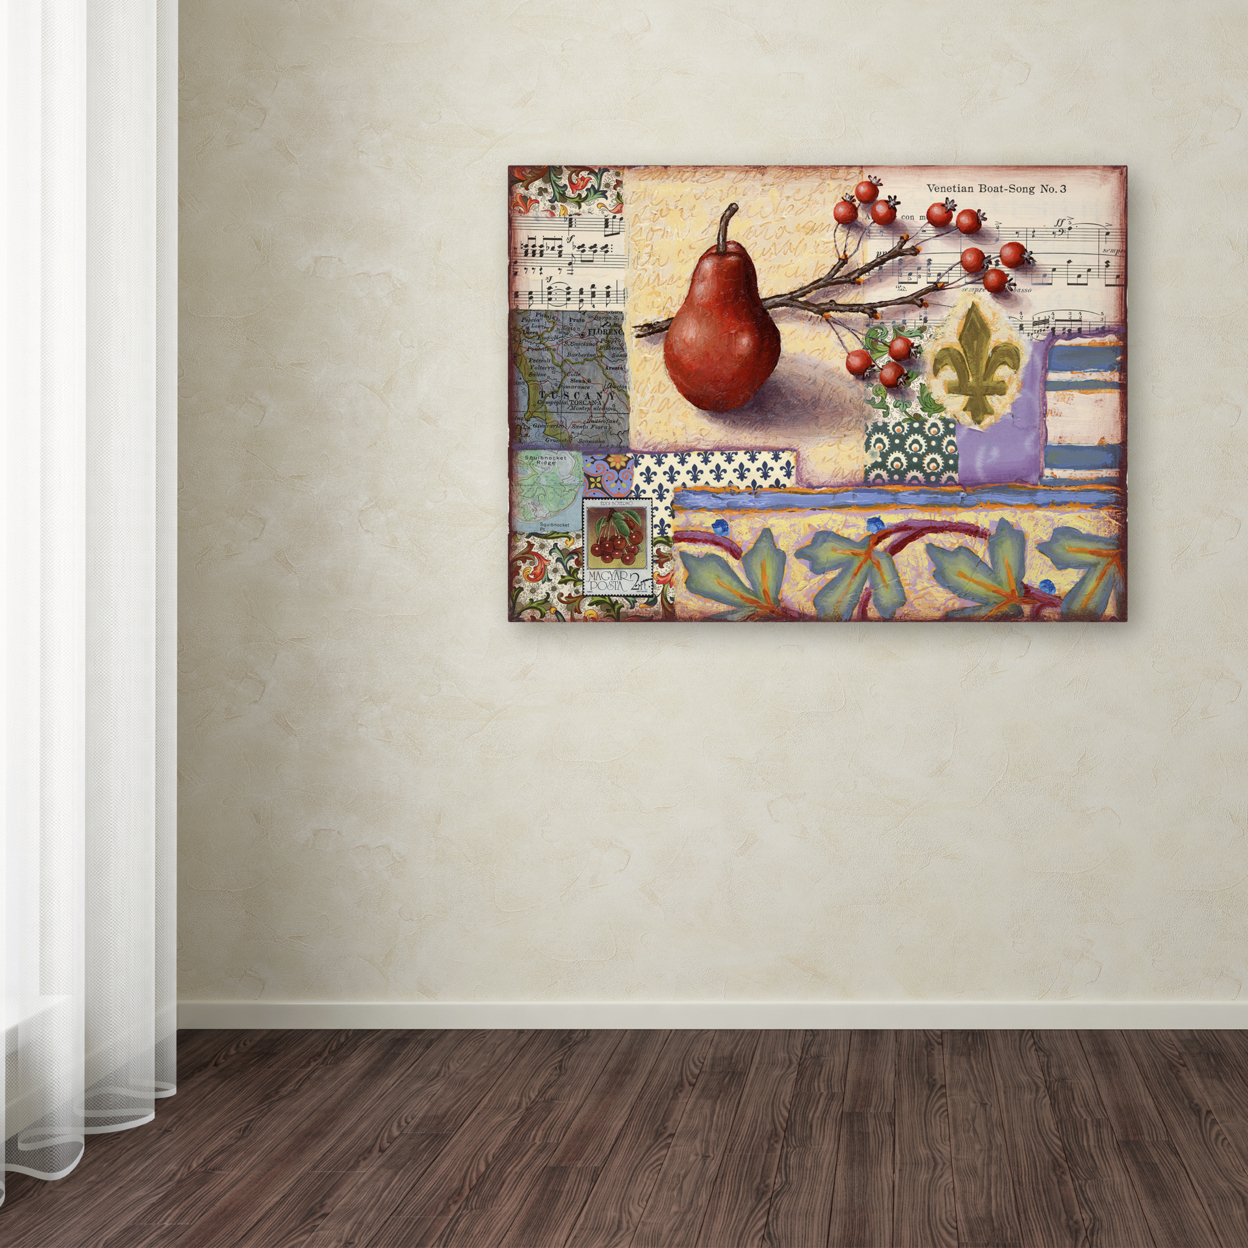 Rachel Paxton 'Florentine Pear' Canvas Wall Art 35 X 47 Inches